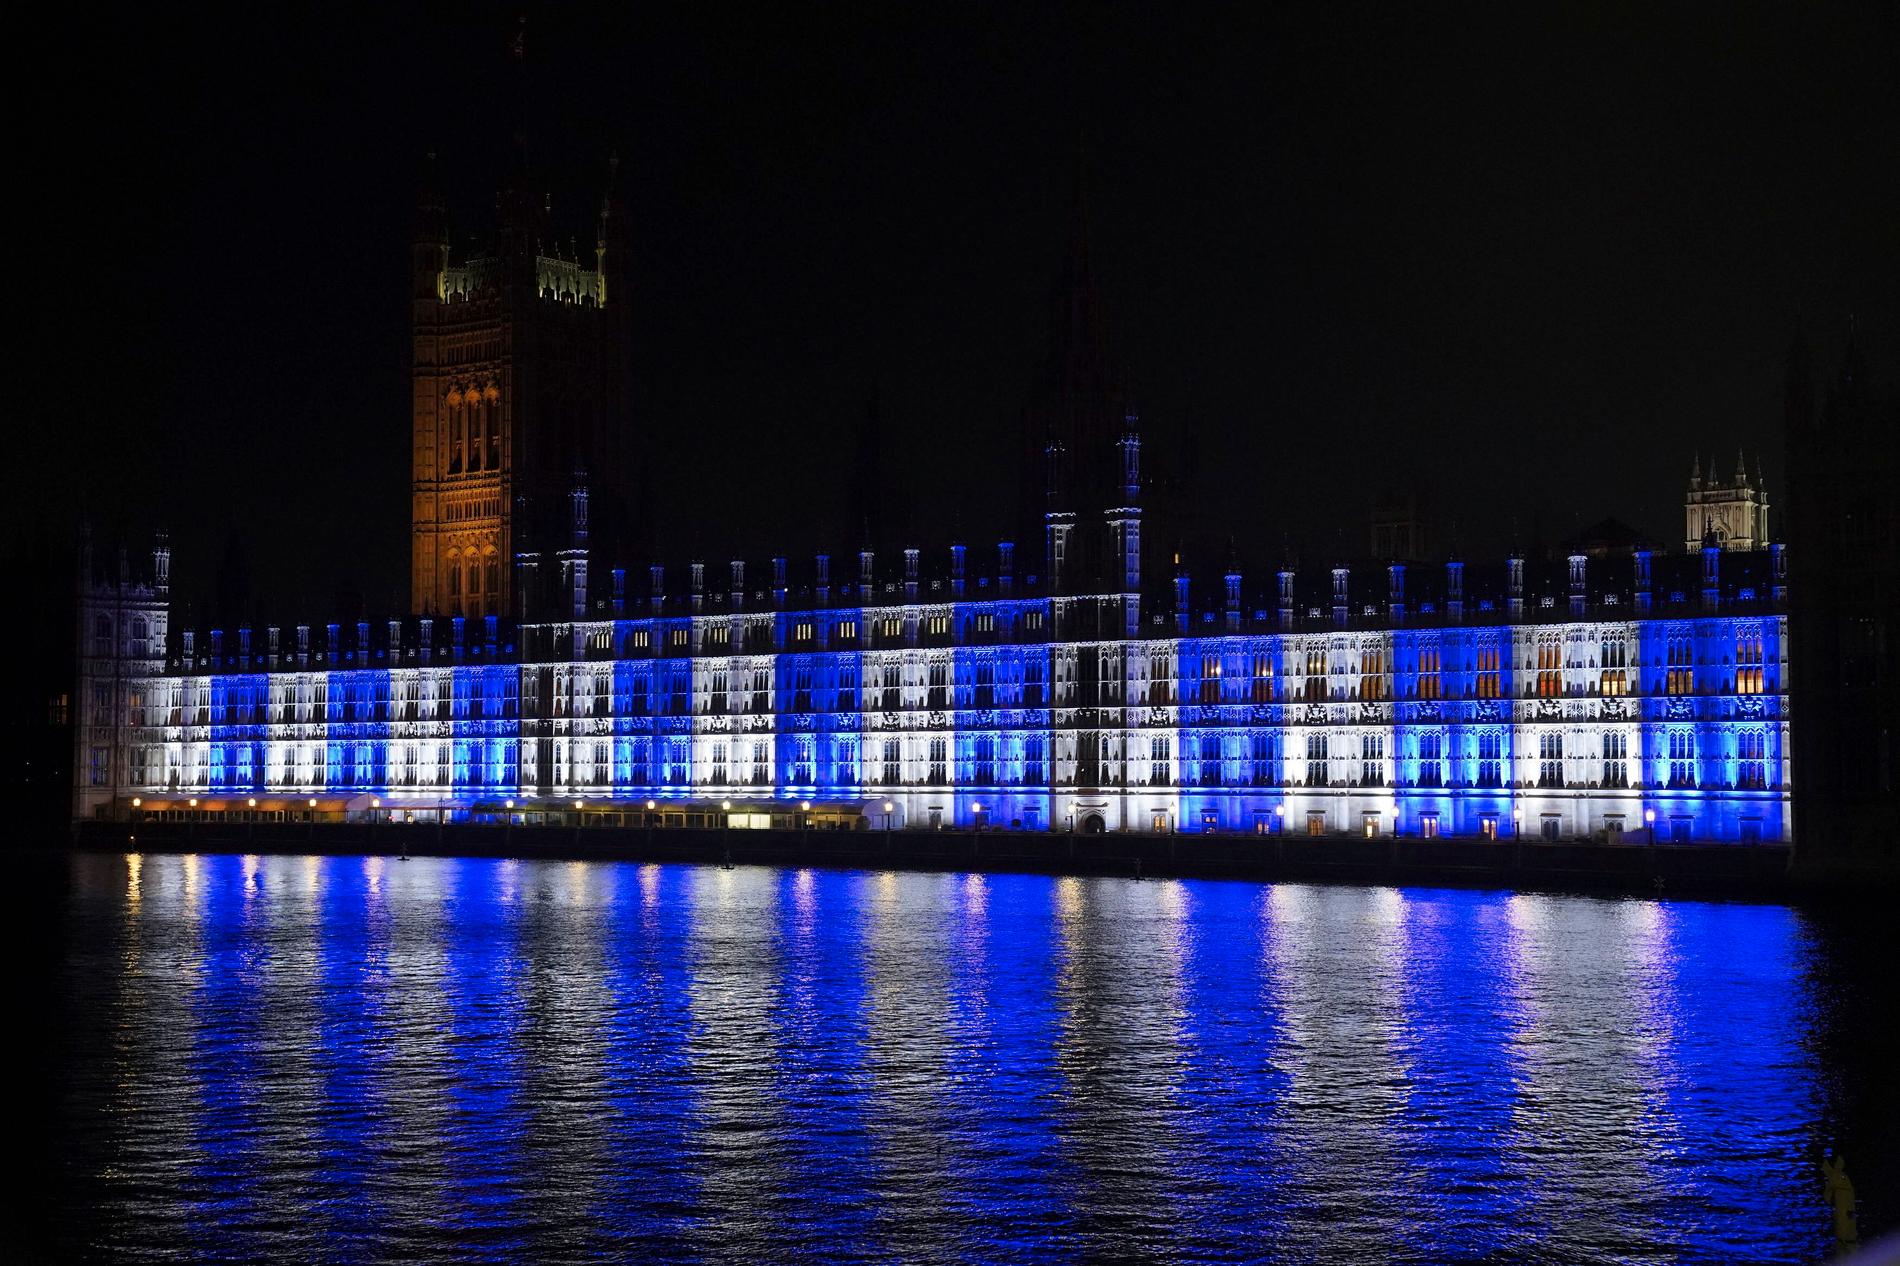 Det brittiska parlamentet lystes upp i den israeliska flaggans färger under måndagen.